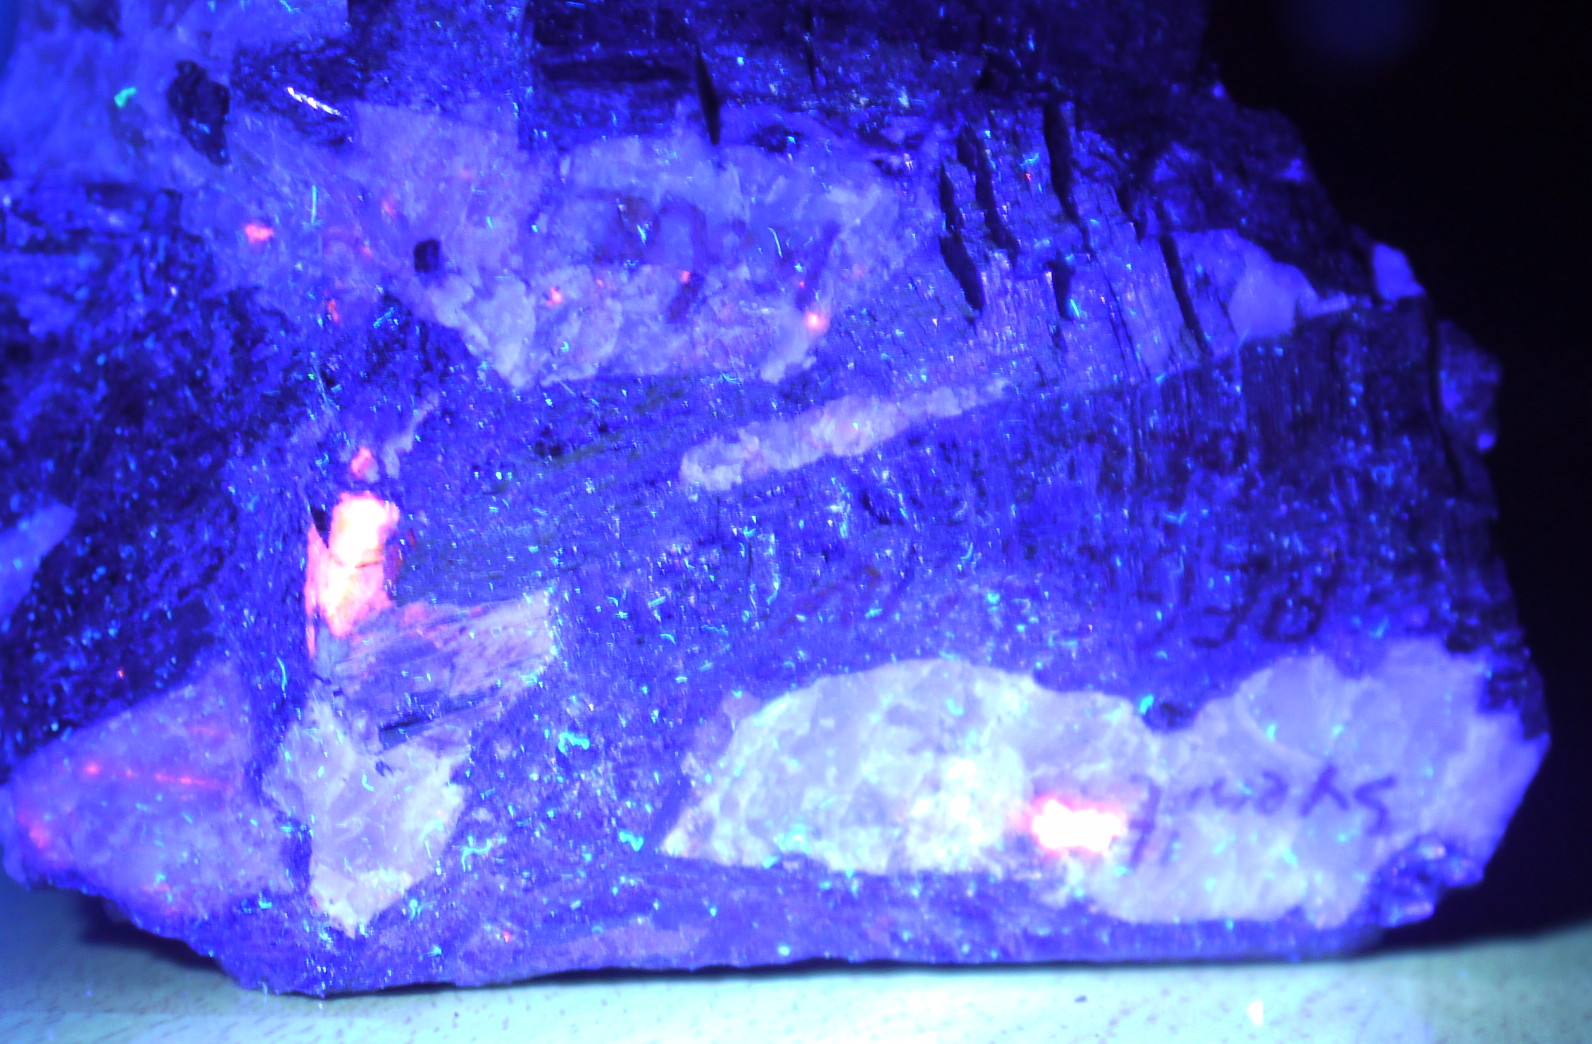 Gestein von der Kolahalbinsel unter UVA